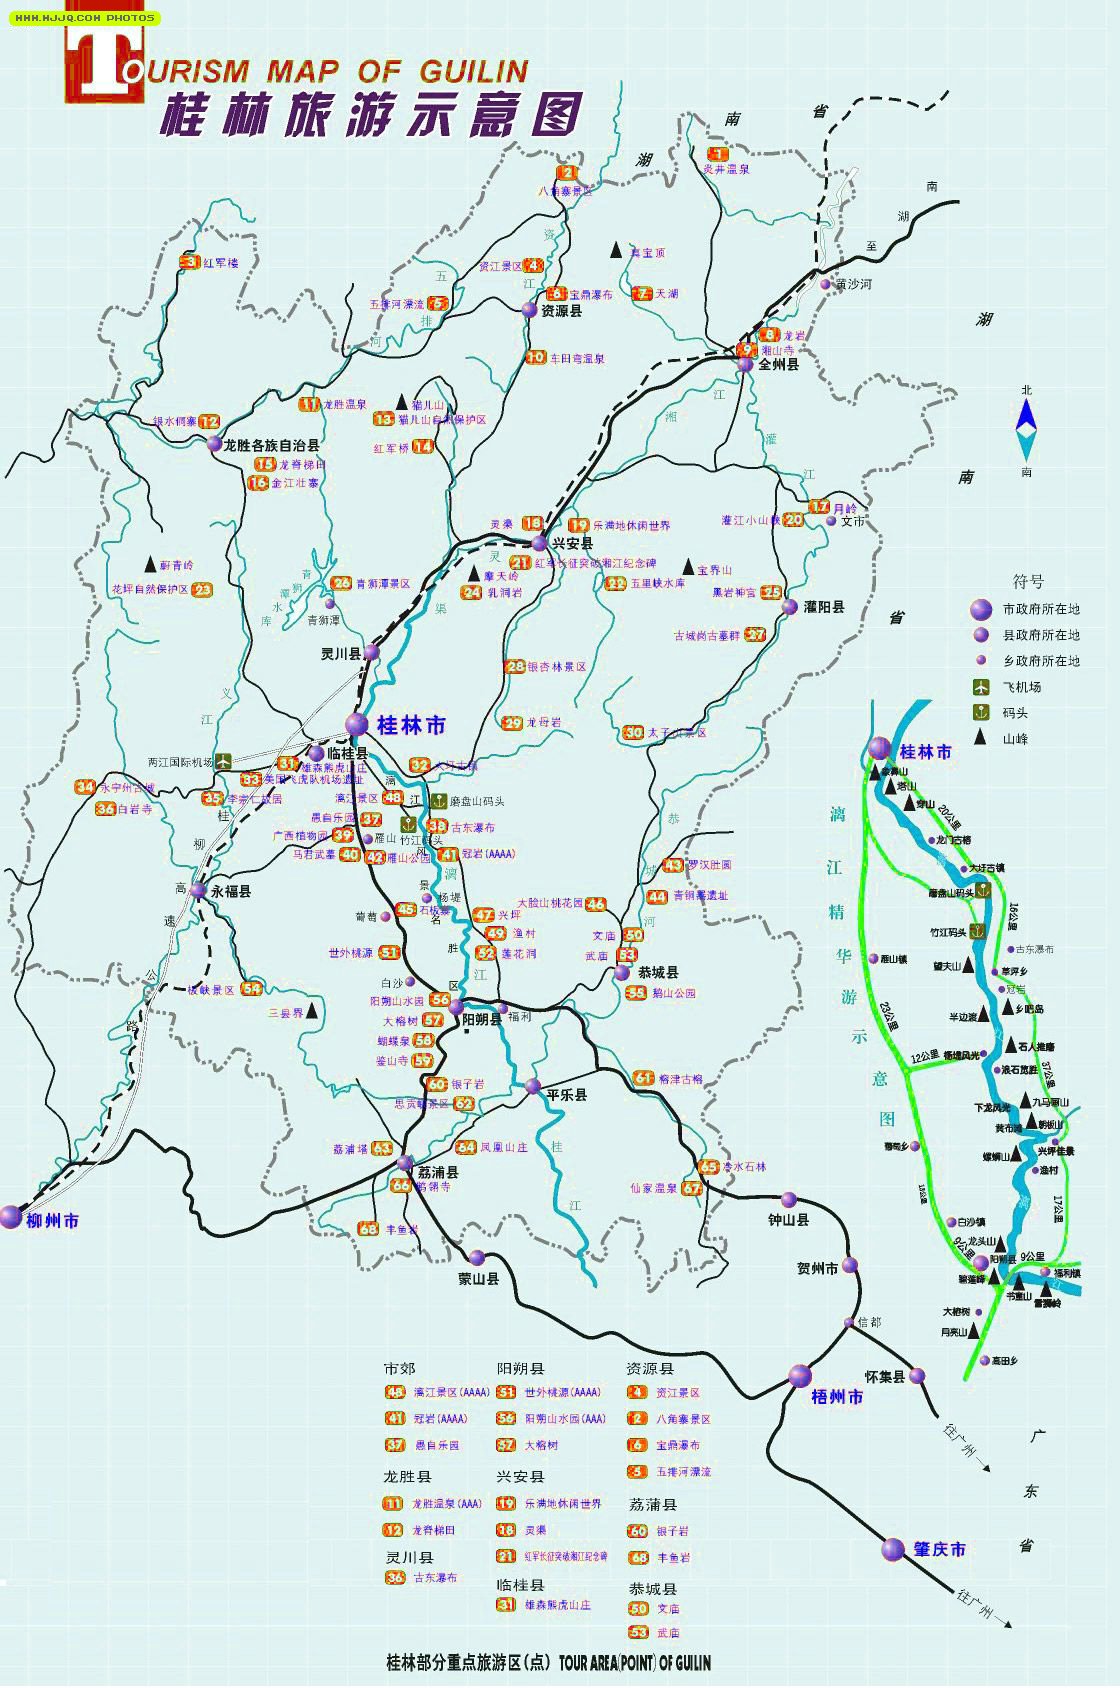 桂林旅游地图- 广西地图Guangxi Maps - 美景旅游网